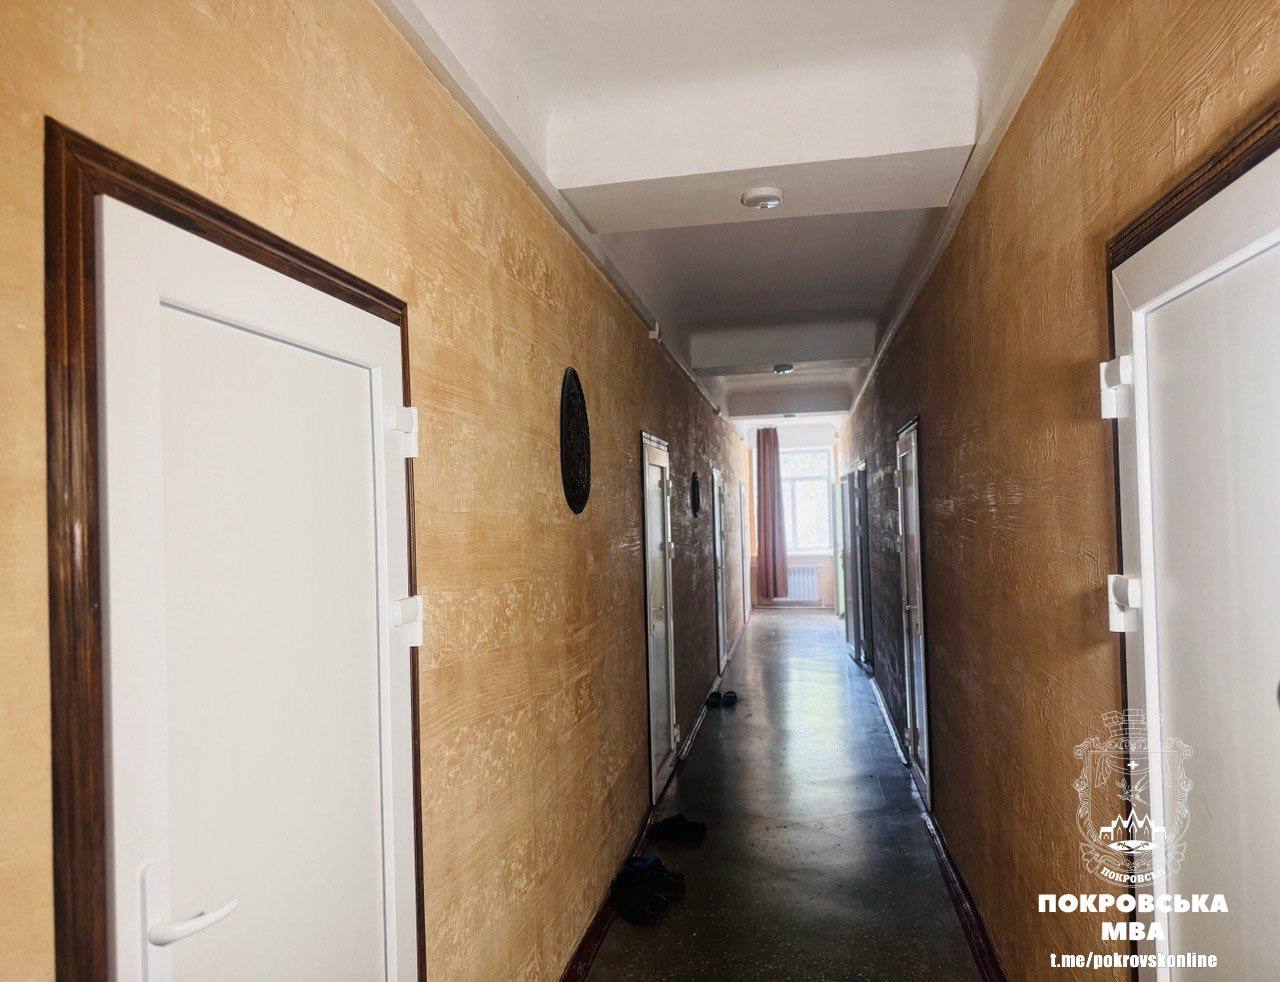 В Покровске для переселенцев ремонтируют общежитие за счет благотворителей и громады (как оно выглядит) 2